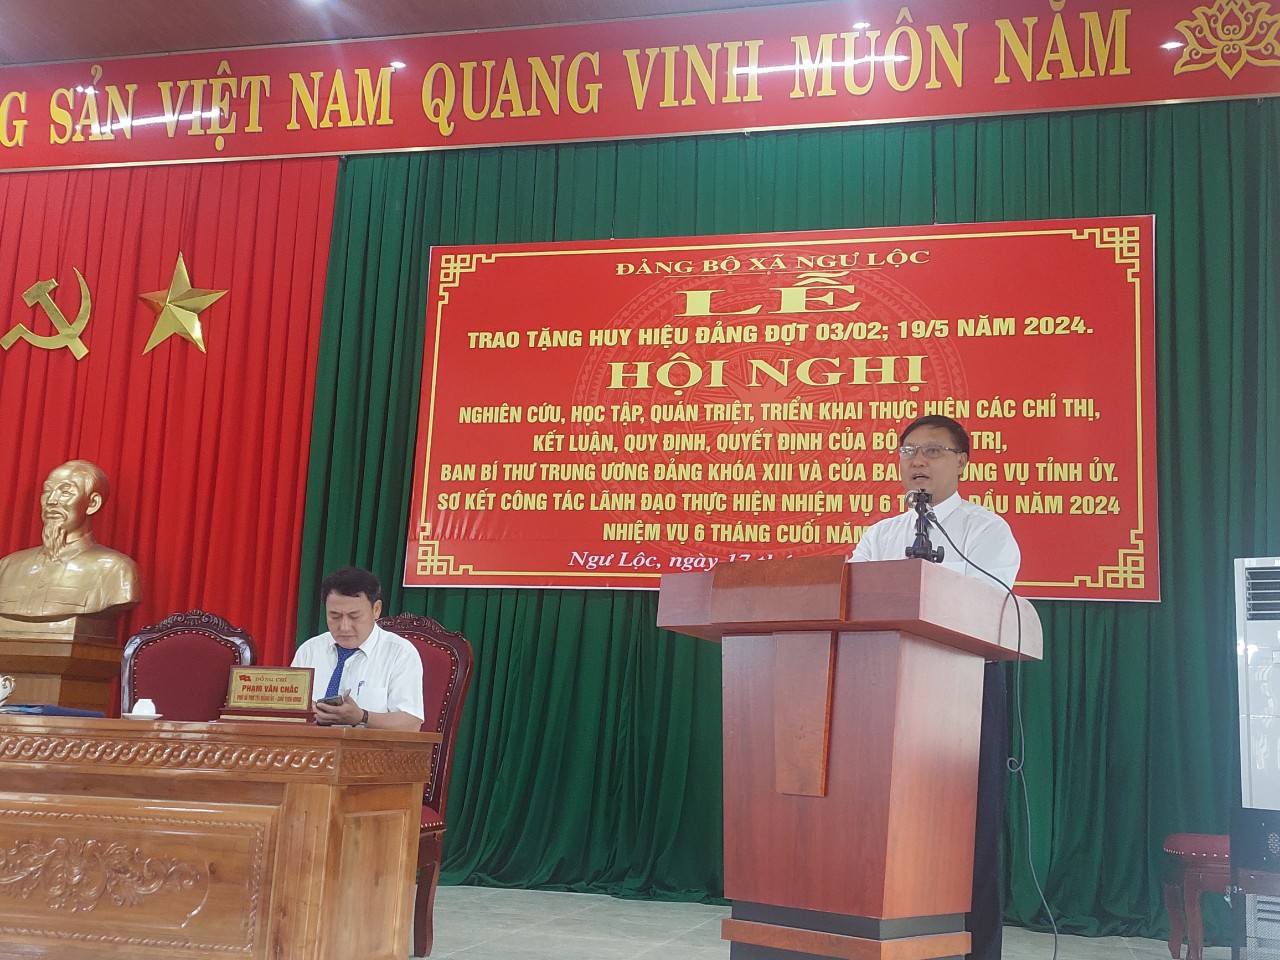 Đảng bộ xã Ngư Lộc  sơ kết công tác xây dựng đảng 6 tháng đầu năm, triển khai nhiệm vụ 6 tháng cuối năm 2024